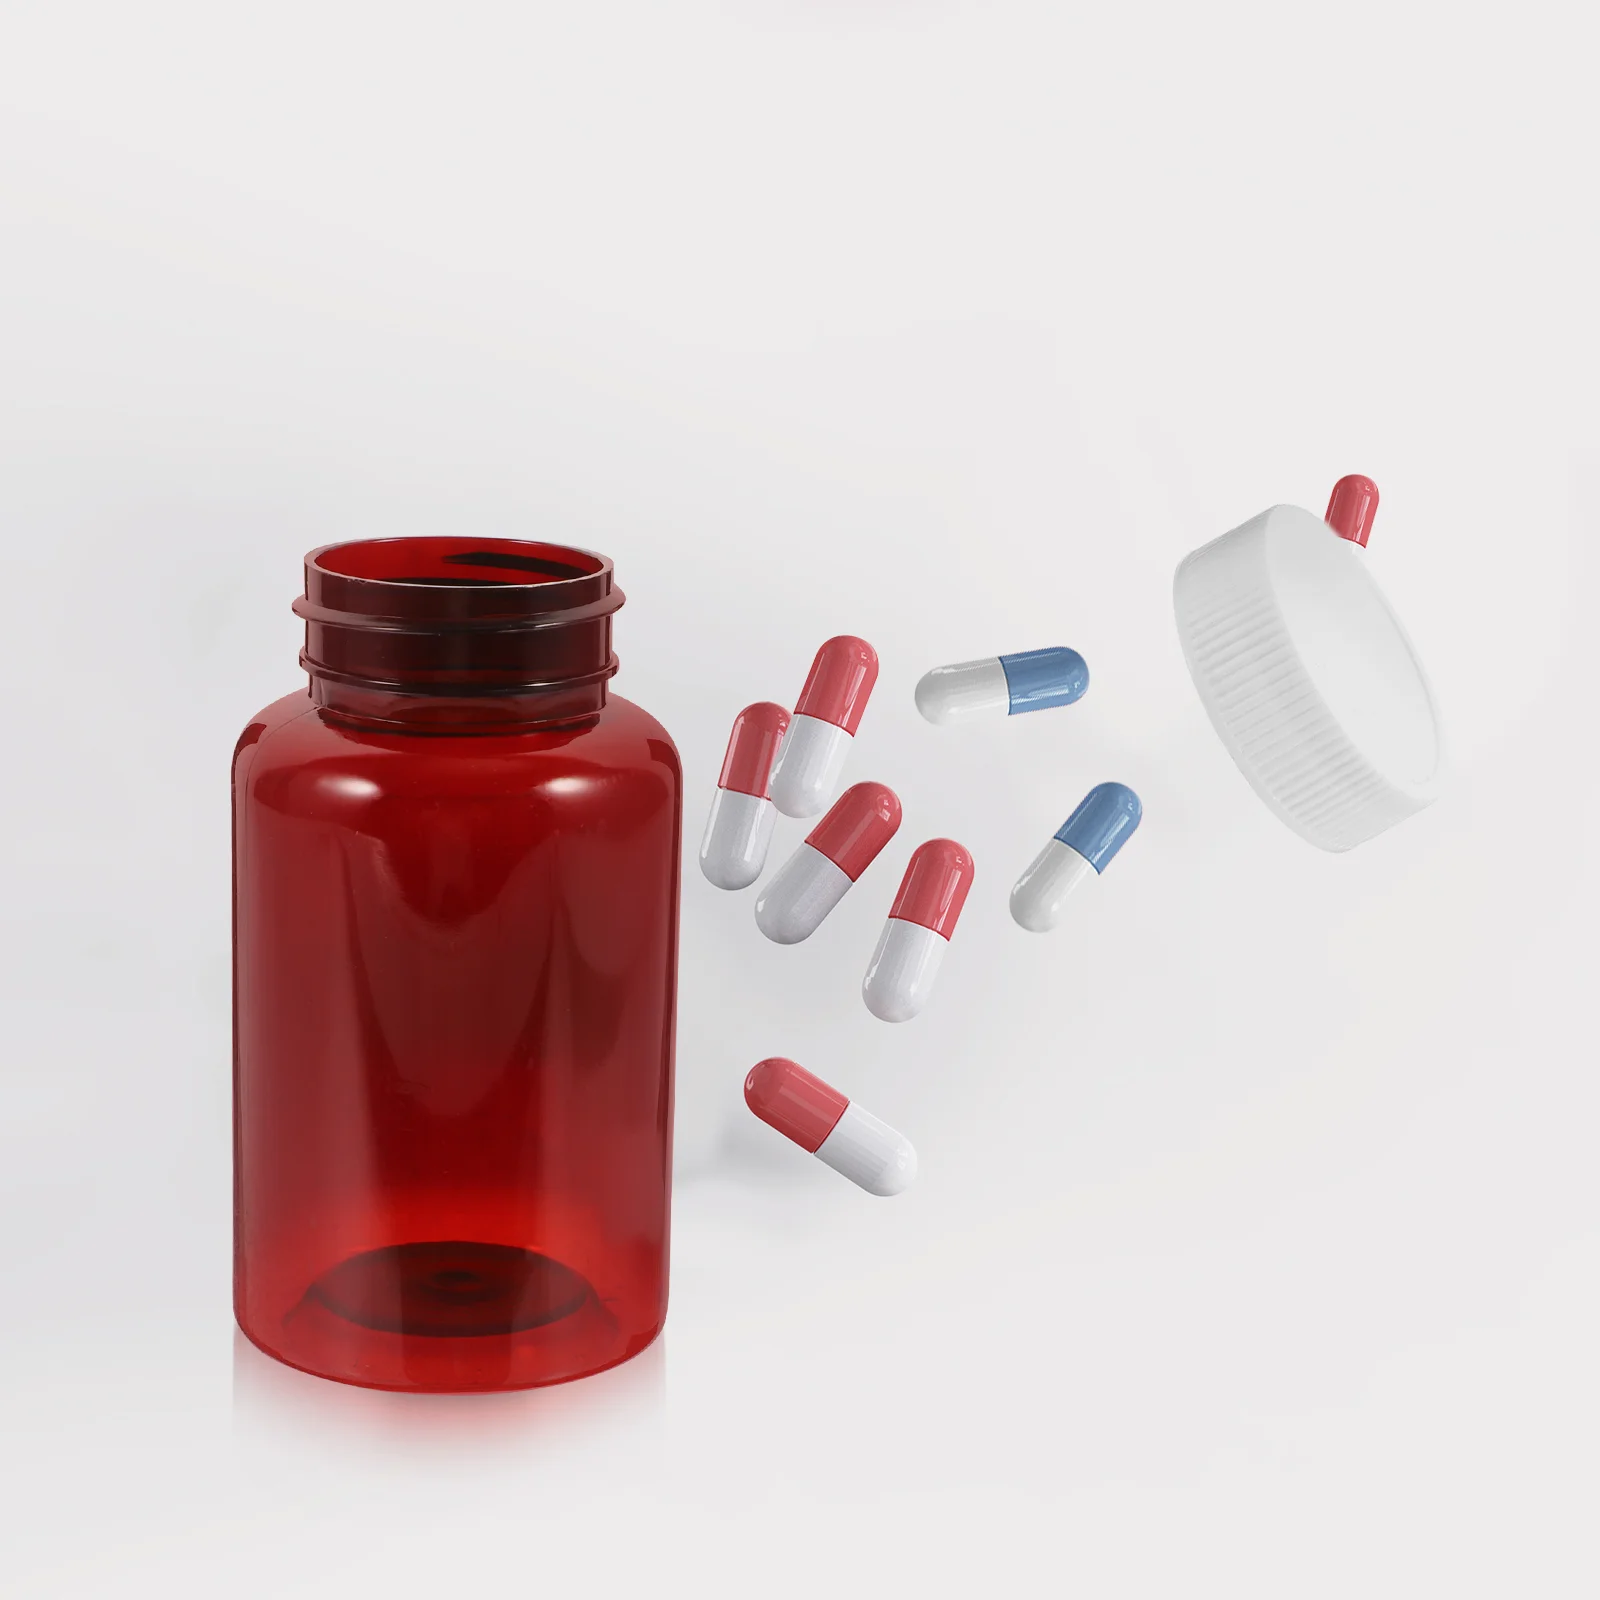 

12 Pcs Empty Pill Storage Bottles Plastic Prescriptions Bottles with Cover Portable Caps The Pet Medicine